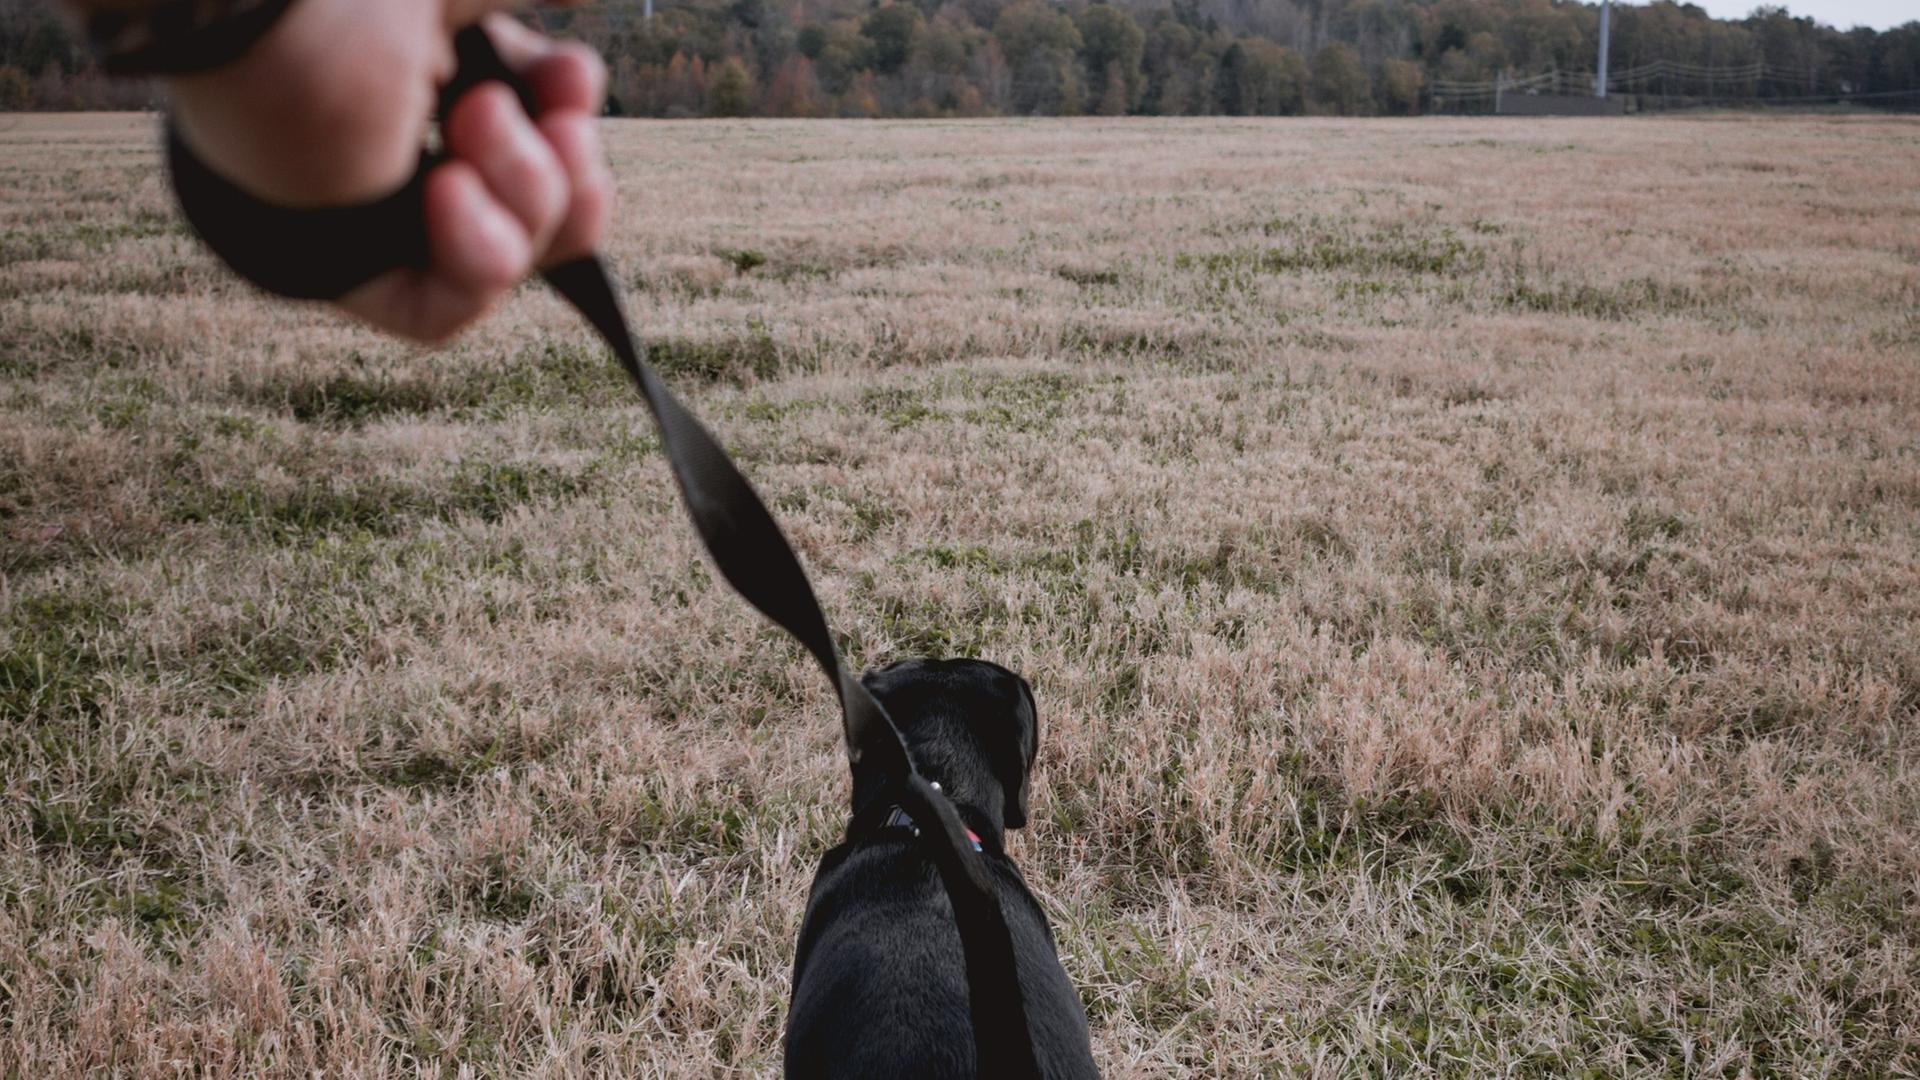 Eine Hand hält eine Leine, an der ein schwarzer Hund läuft. Der Hund zieht gradeaus über eine Wiese. Am Horizont ist Wald erkennbar.